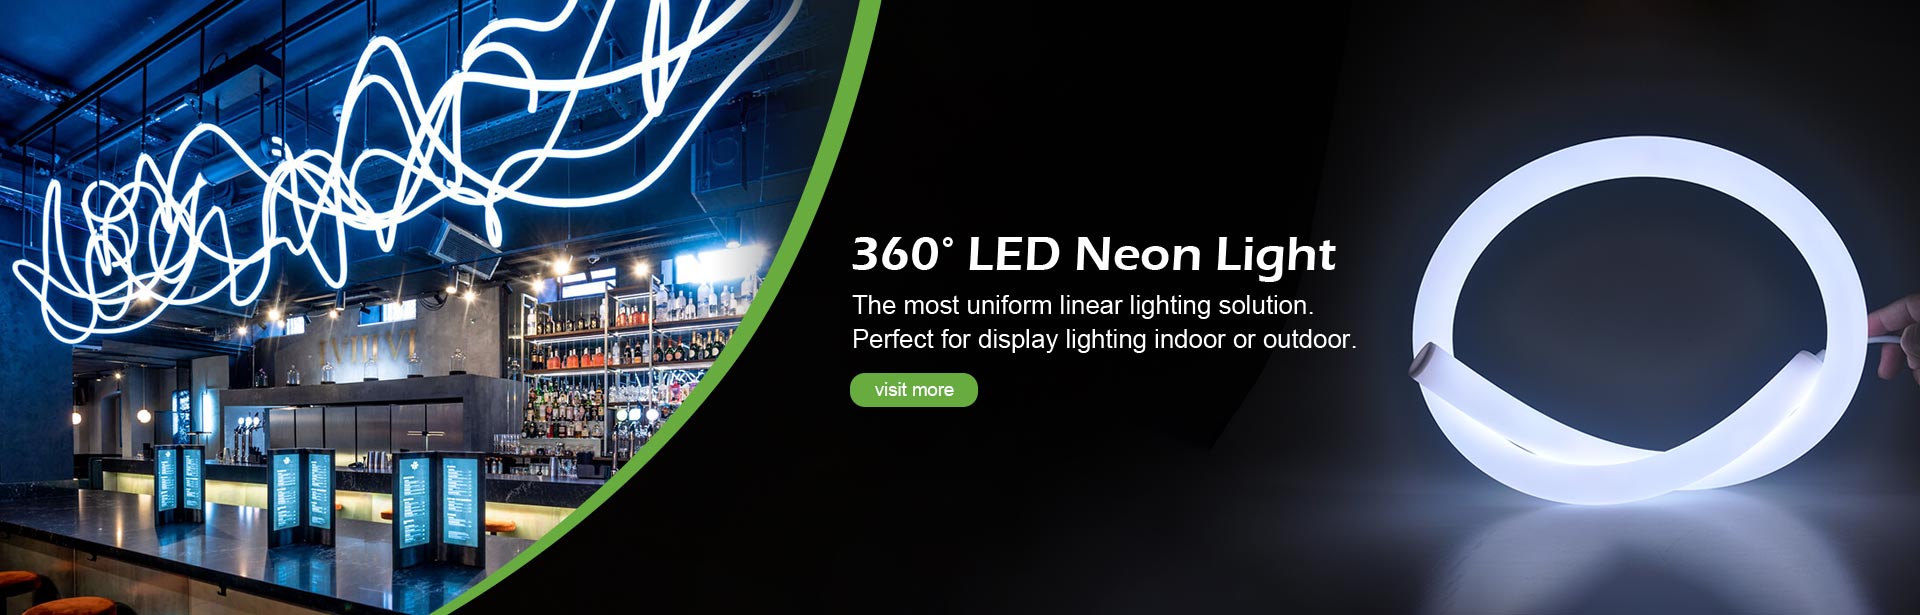 360° LED neon flex light